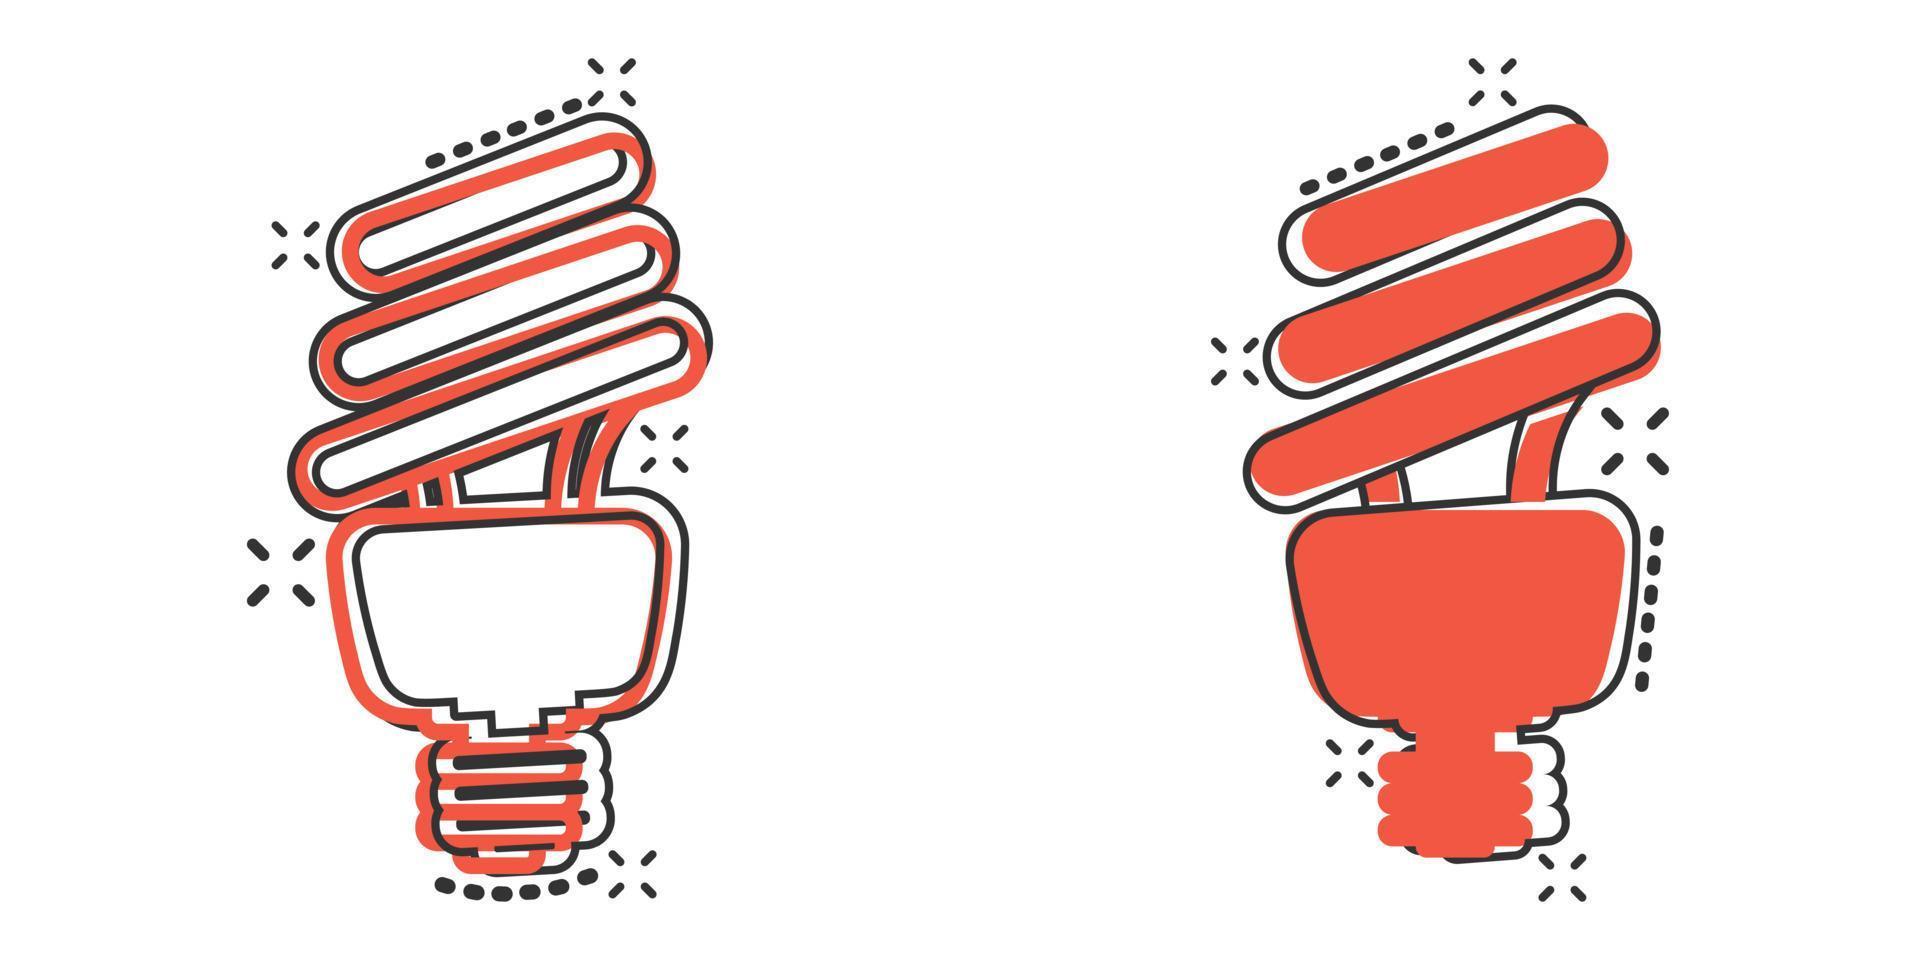 ícone de lâmpada em estilo cômico. ilustração em vetor lâmpada dos desenhos animados em fundo branco isolado. conceito de negócio de sinal de efeito de respingo de lâmpada de energia.